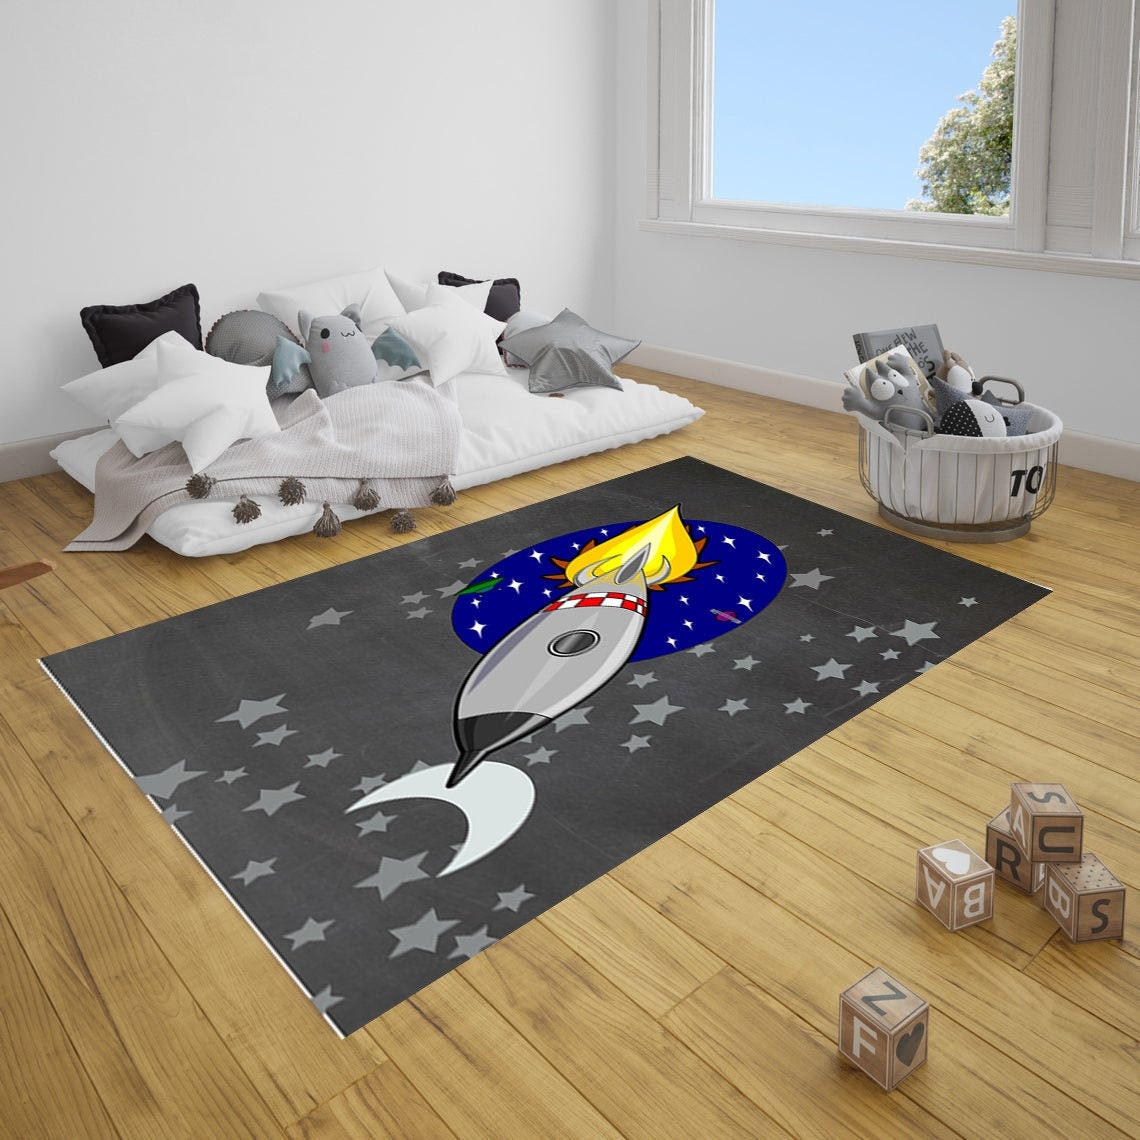  Alfombra Rocket, alfombra personalizada, alfombra